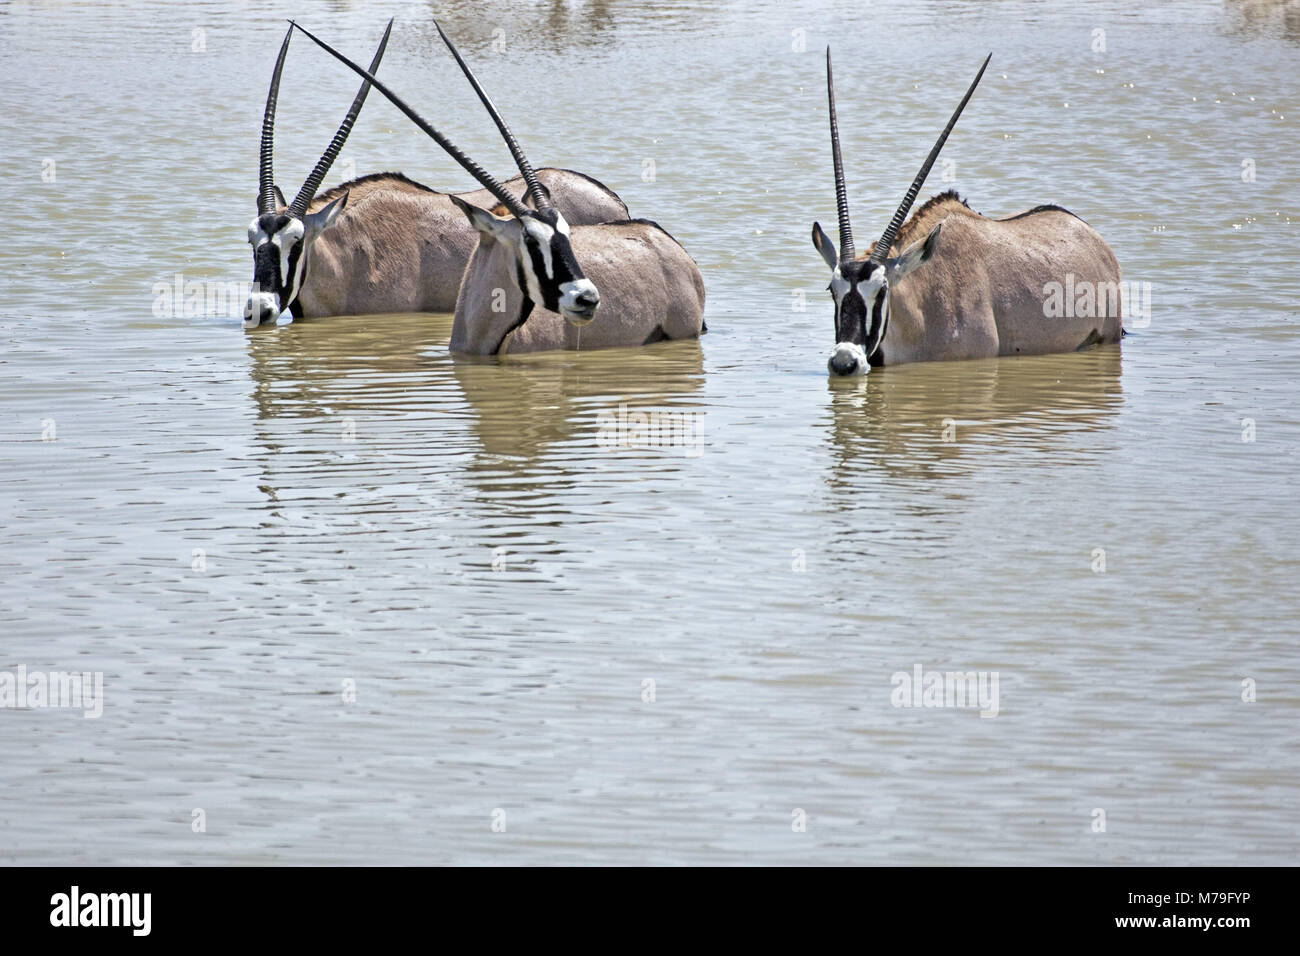 Afrika, Deutsch-Südwest-Afrika, Namibia, Etoscha Nationalpark, Oryx, Wasser Loch, Trinken, Stockfoto